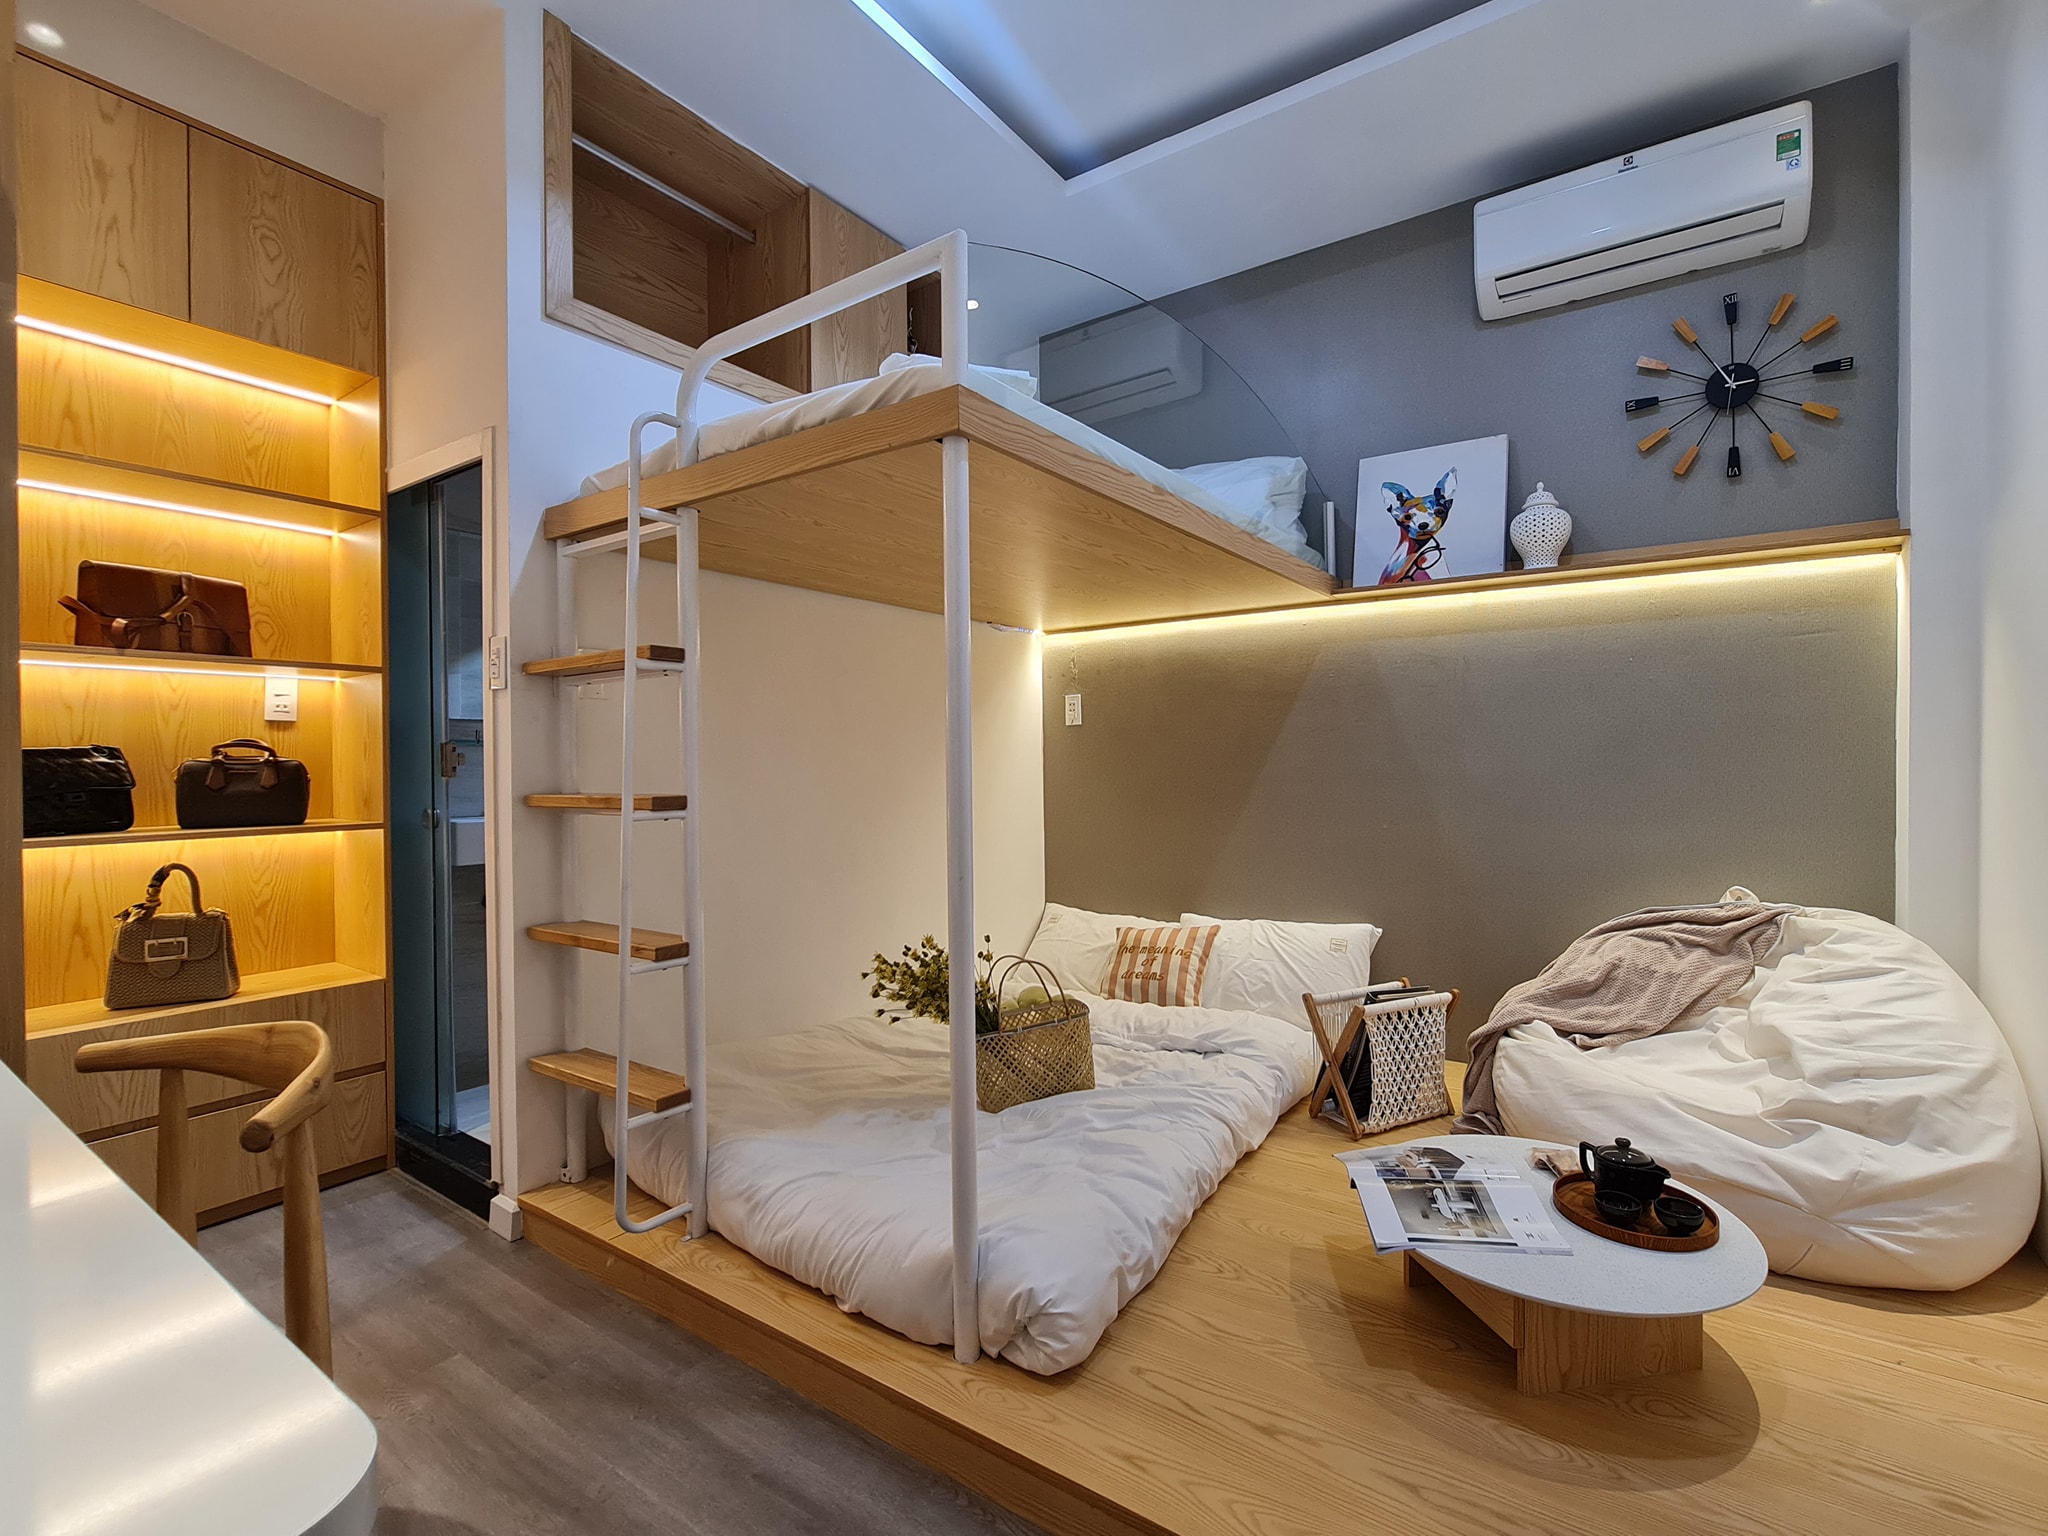 Không gian nội thất ứng dụng chất liệu gỗ kết hợp ánh sáng vàng tạo cảm giác ấm cúng nhất